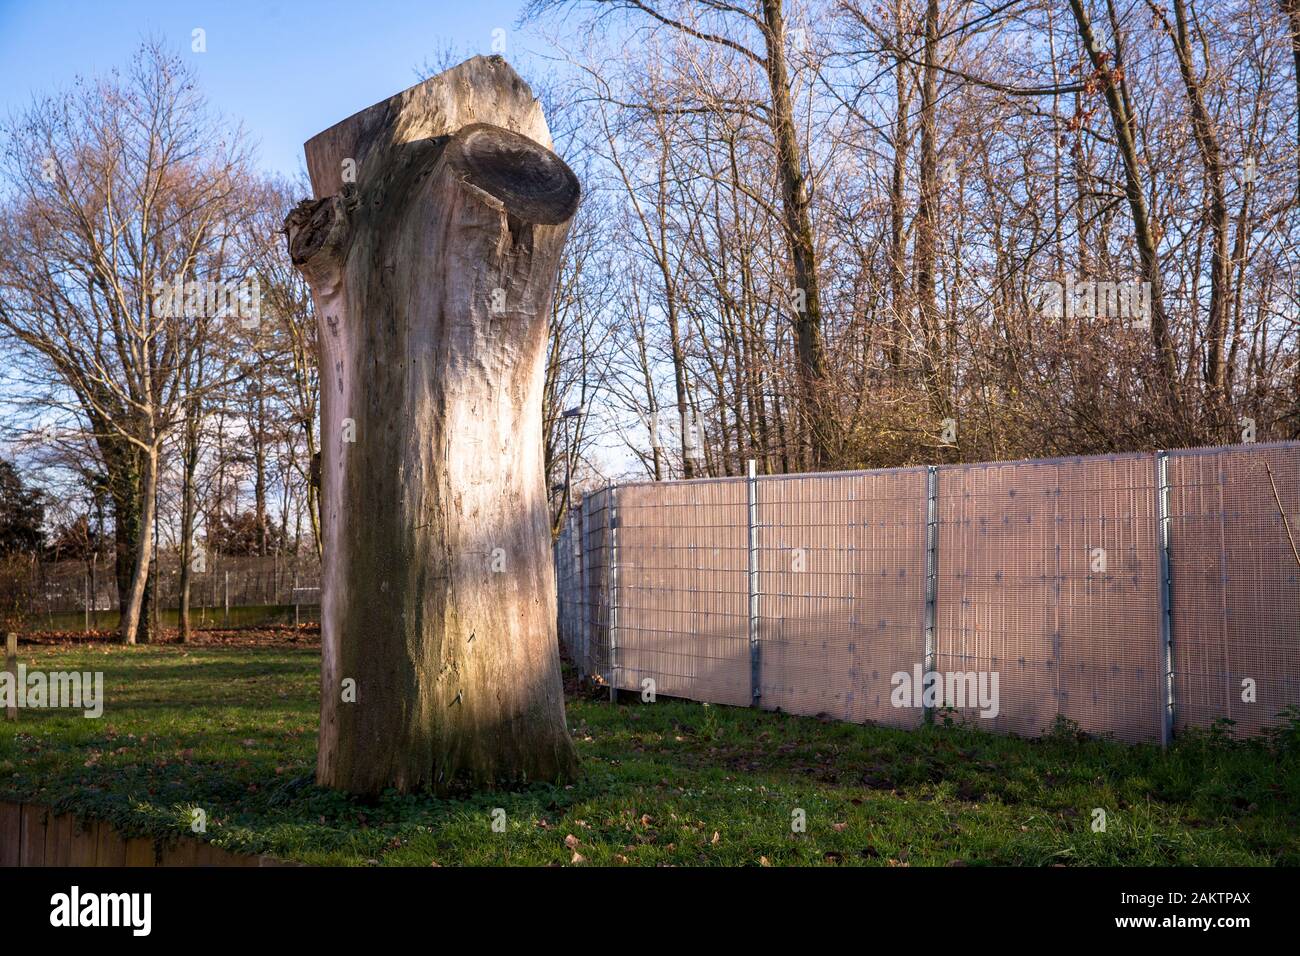 remains of a large tree in the district Niehl, Cologne, Germany.  Rest eines grossen Baums im Stadtteil Niehl, Koeln, Deutschland. Stock Photo